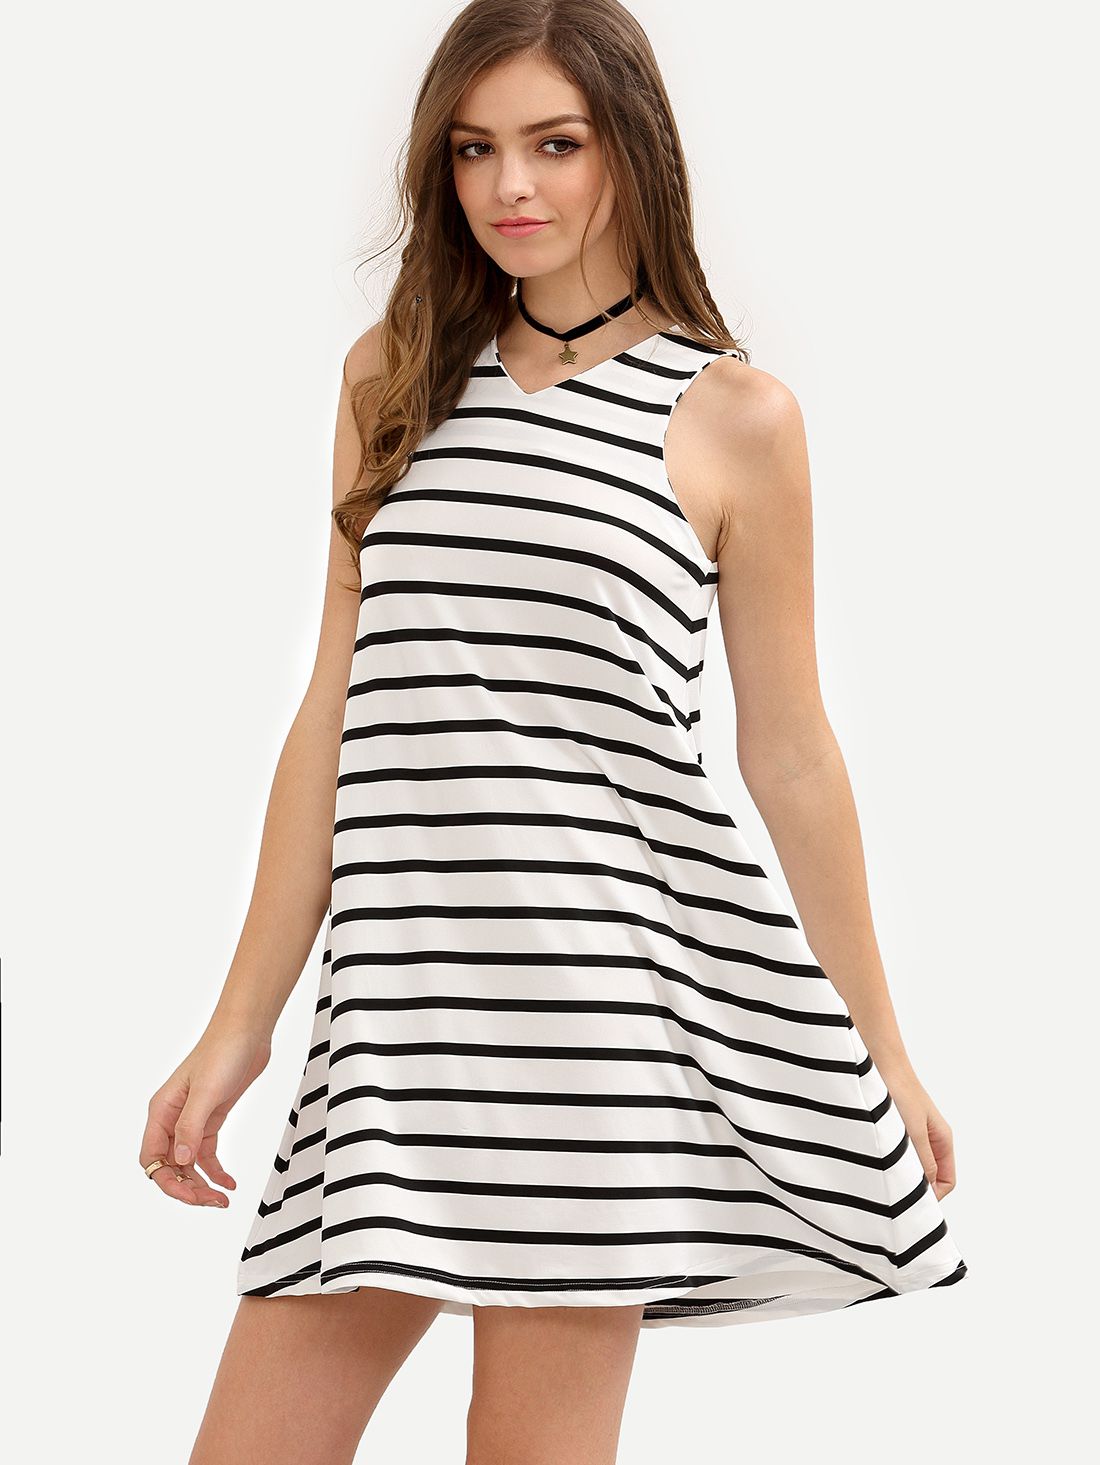 Black and White Striped Sleeveless V Neck Dress